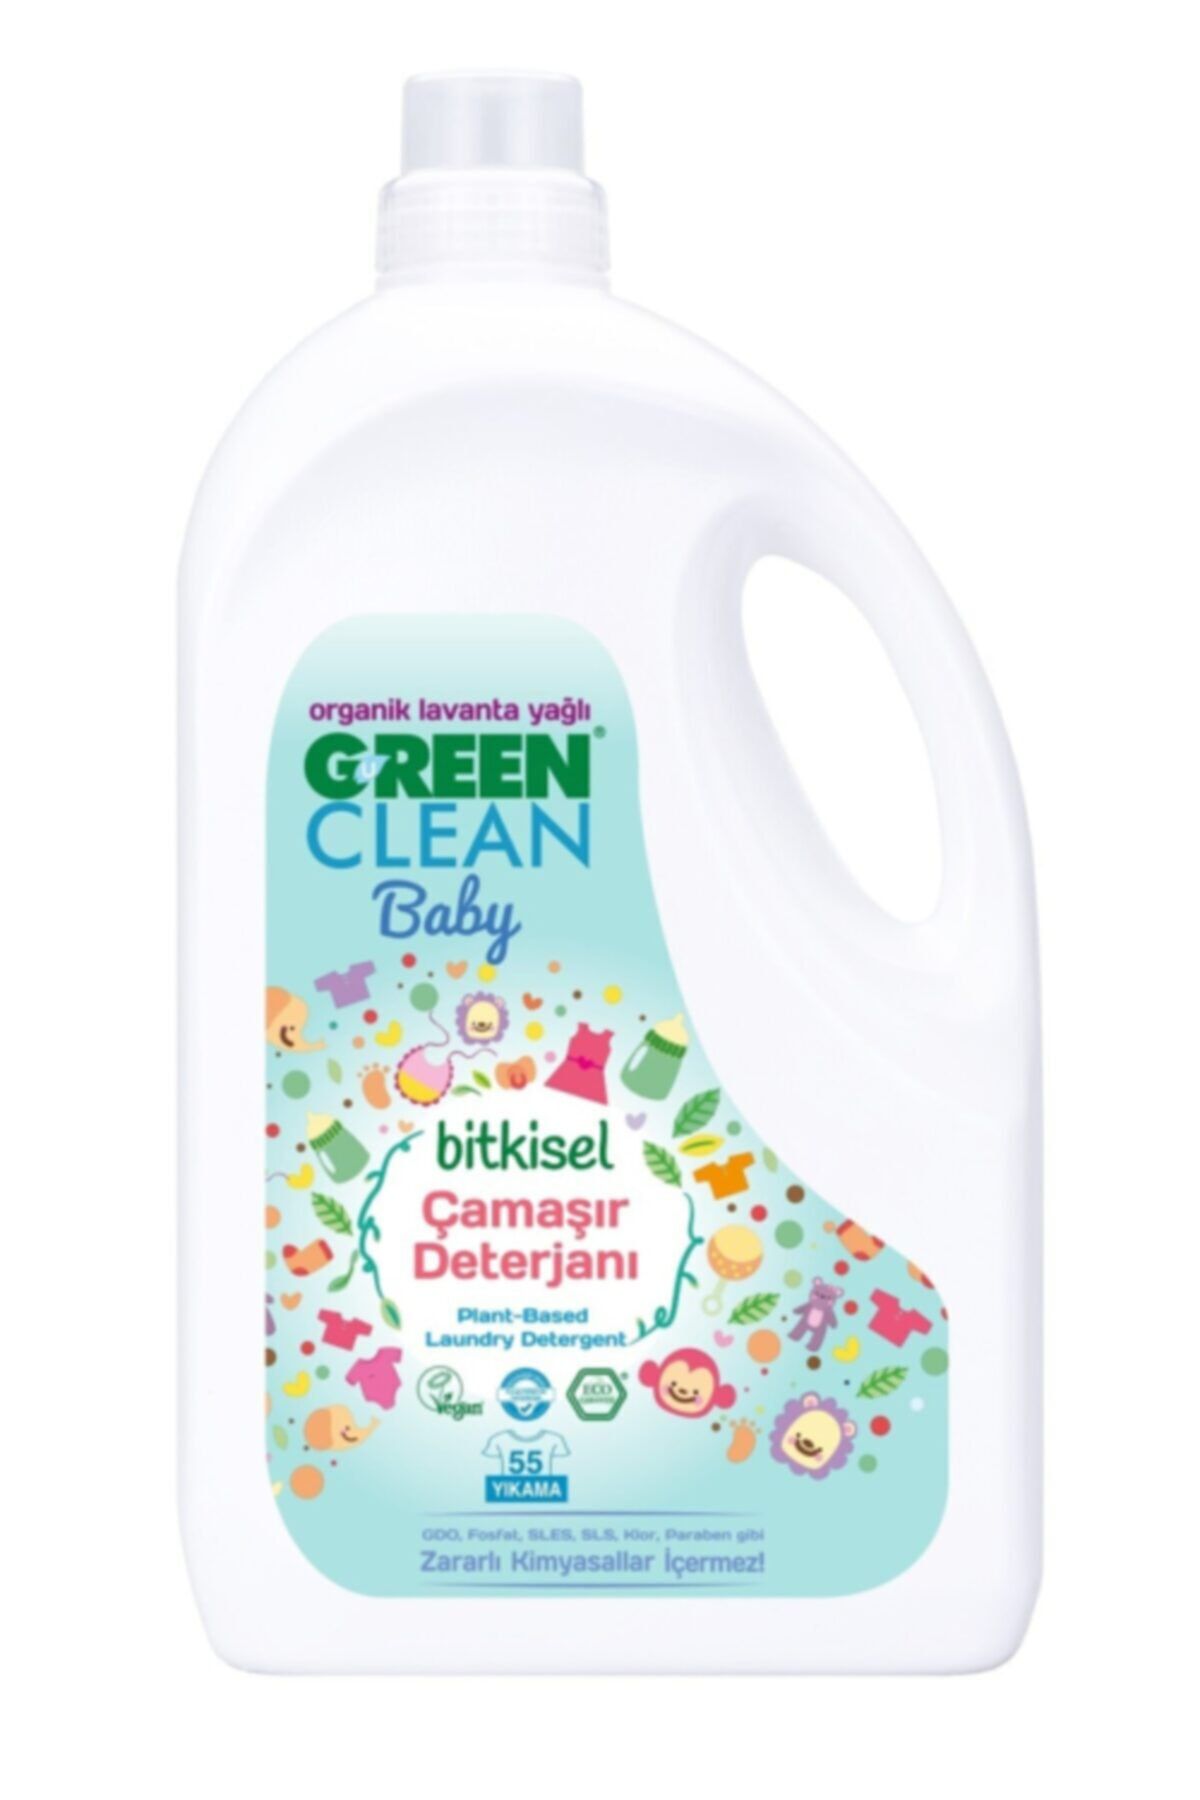 Green Clean Organik Lavanta Yağlı Baby Bitkisel Çamaşır Deterjanı 2750 ml